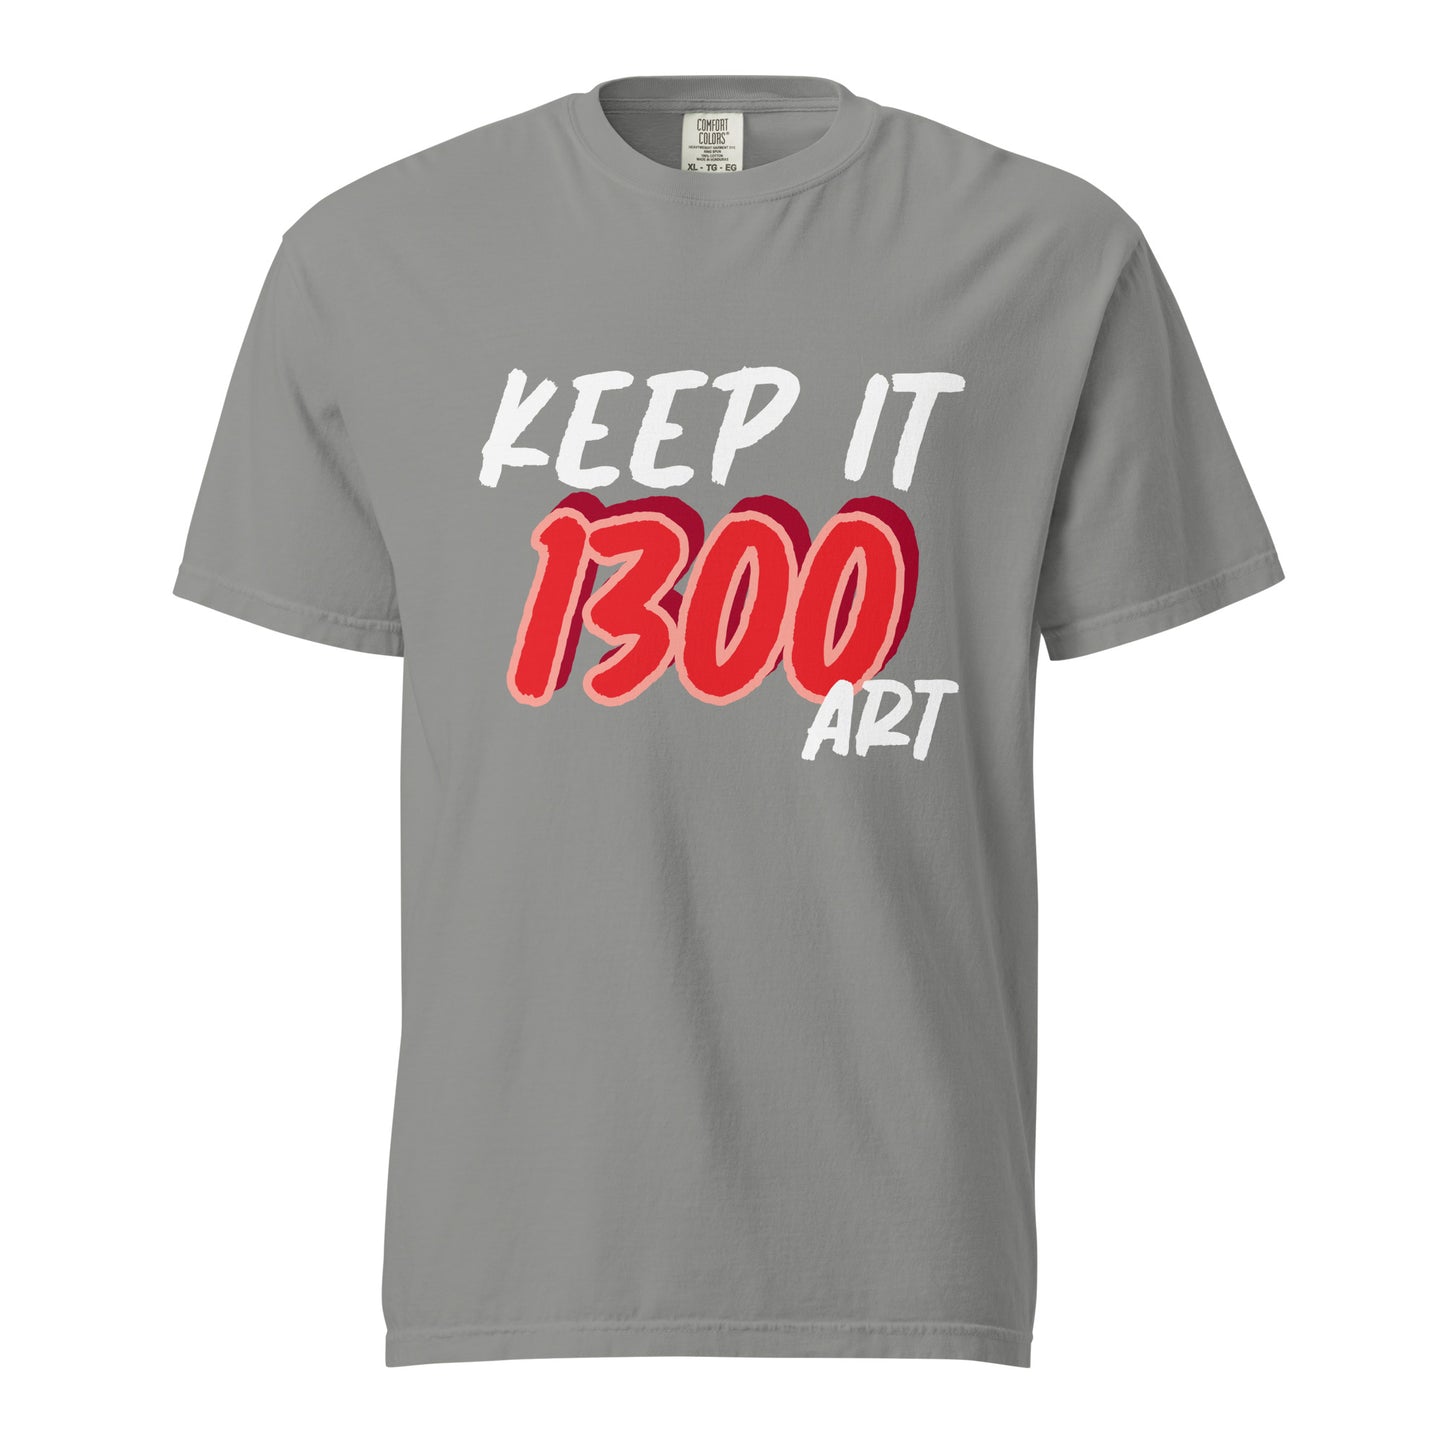 "KEEP IT 1300 ART" Unisex heavyweight t-shirt